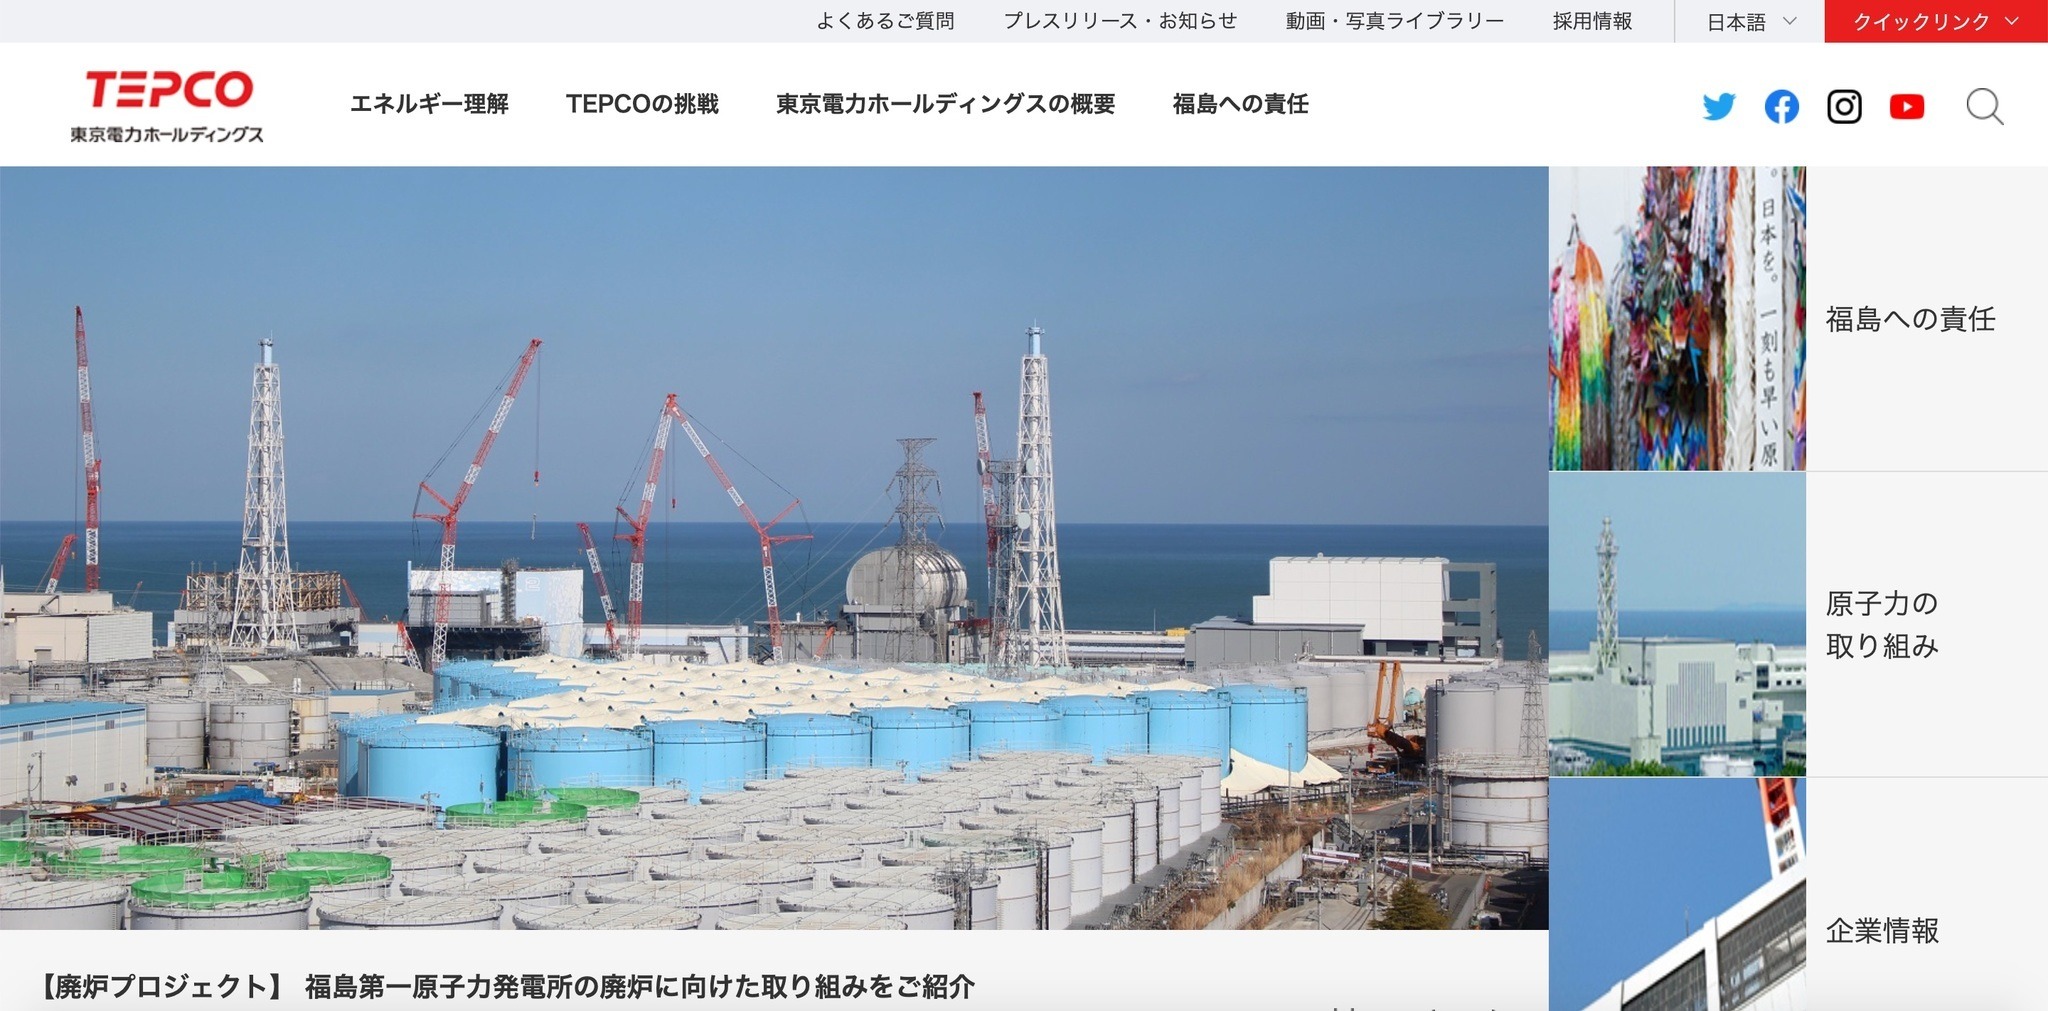 福島第一原子力発電所で他企業の個人情報を誤送信 6 053件の個人情報が流出 東京電力ホールディングス Scannetsecurity